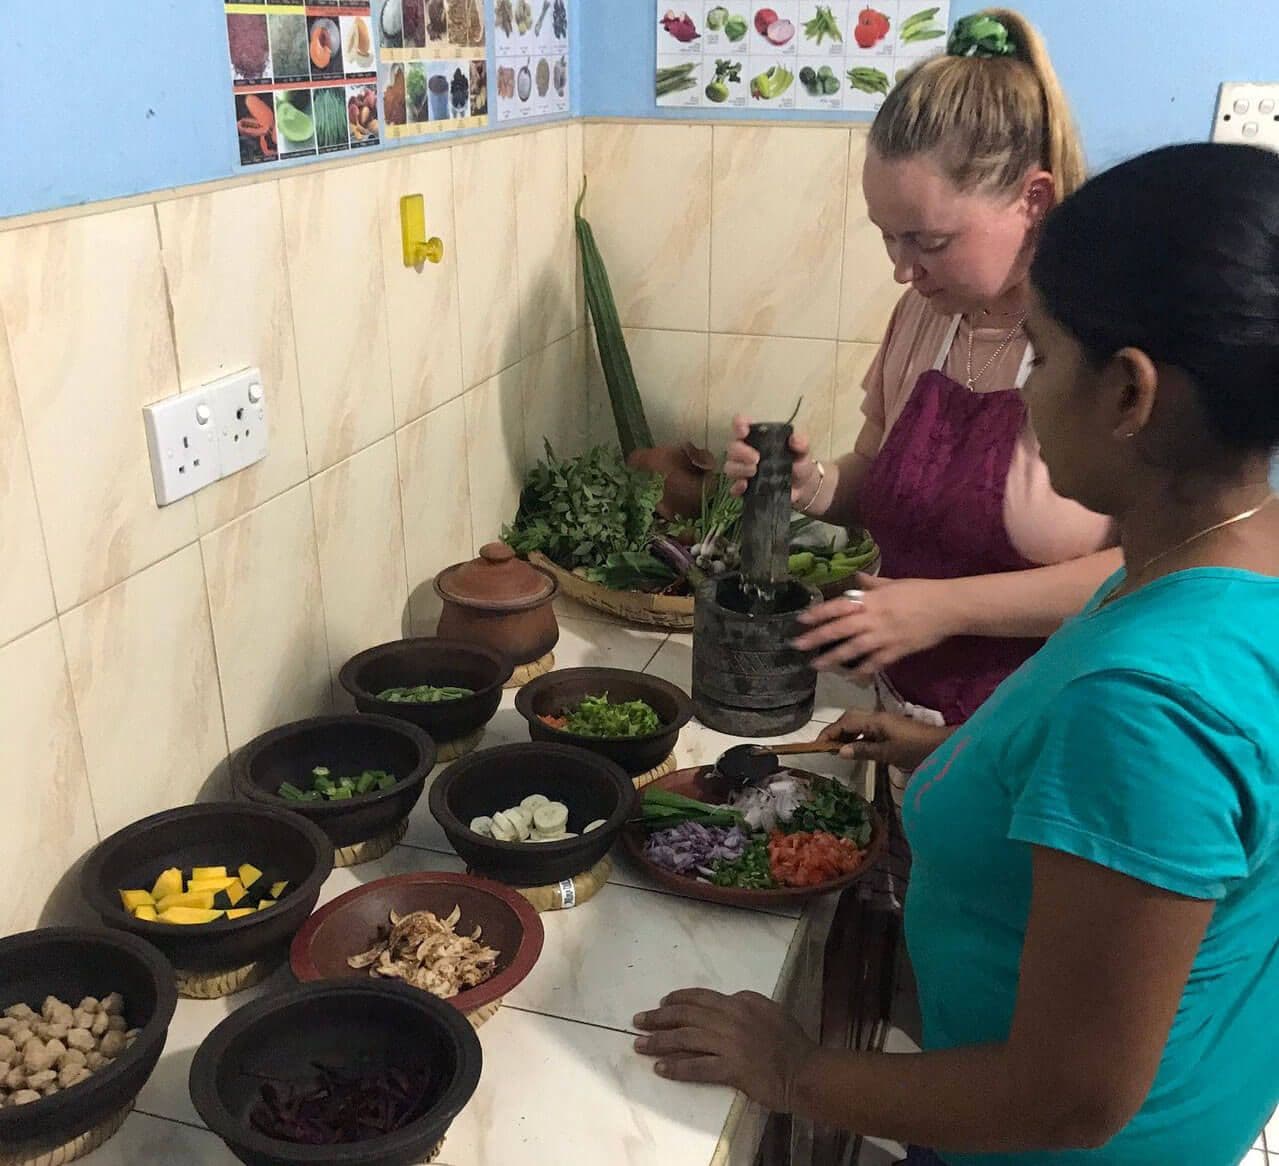 سائحة تحصل على تجربة الطبخ بتوجيه من سيدة سريلانكية في سريلانكا